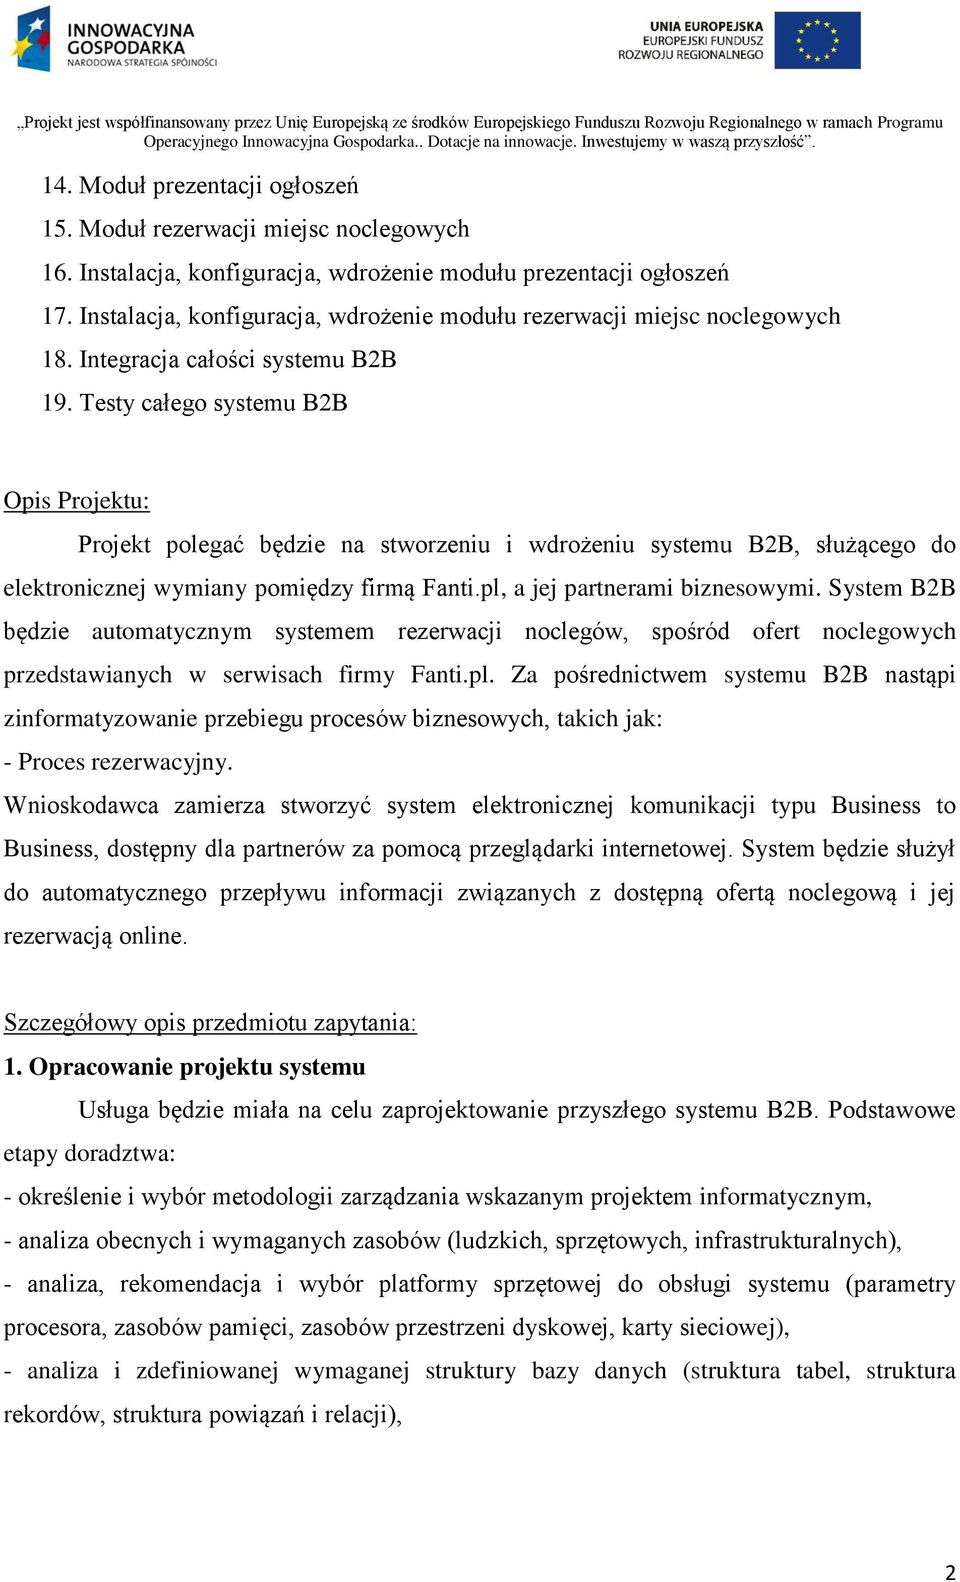 System B2B będzie automatycznym systemem rezerwacji noclegów, spośród ofert noclegowych przedstawianych w serwisach firmy Fanti.pl.